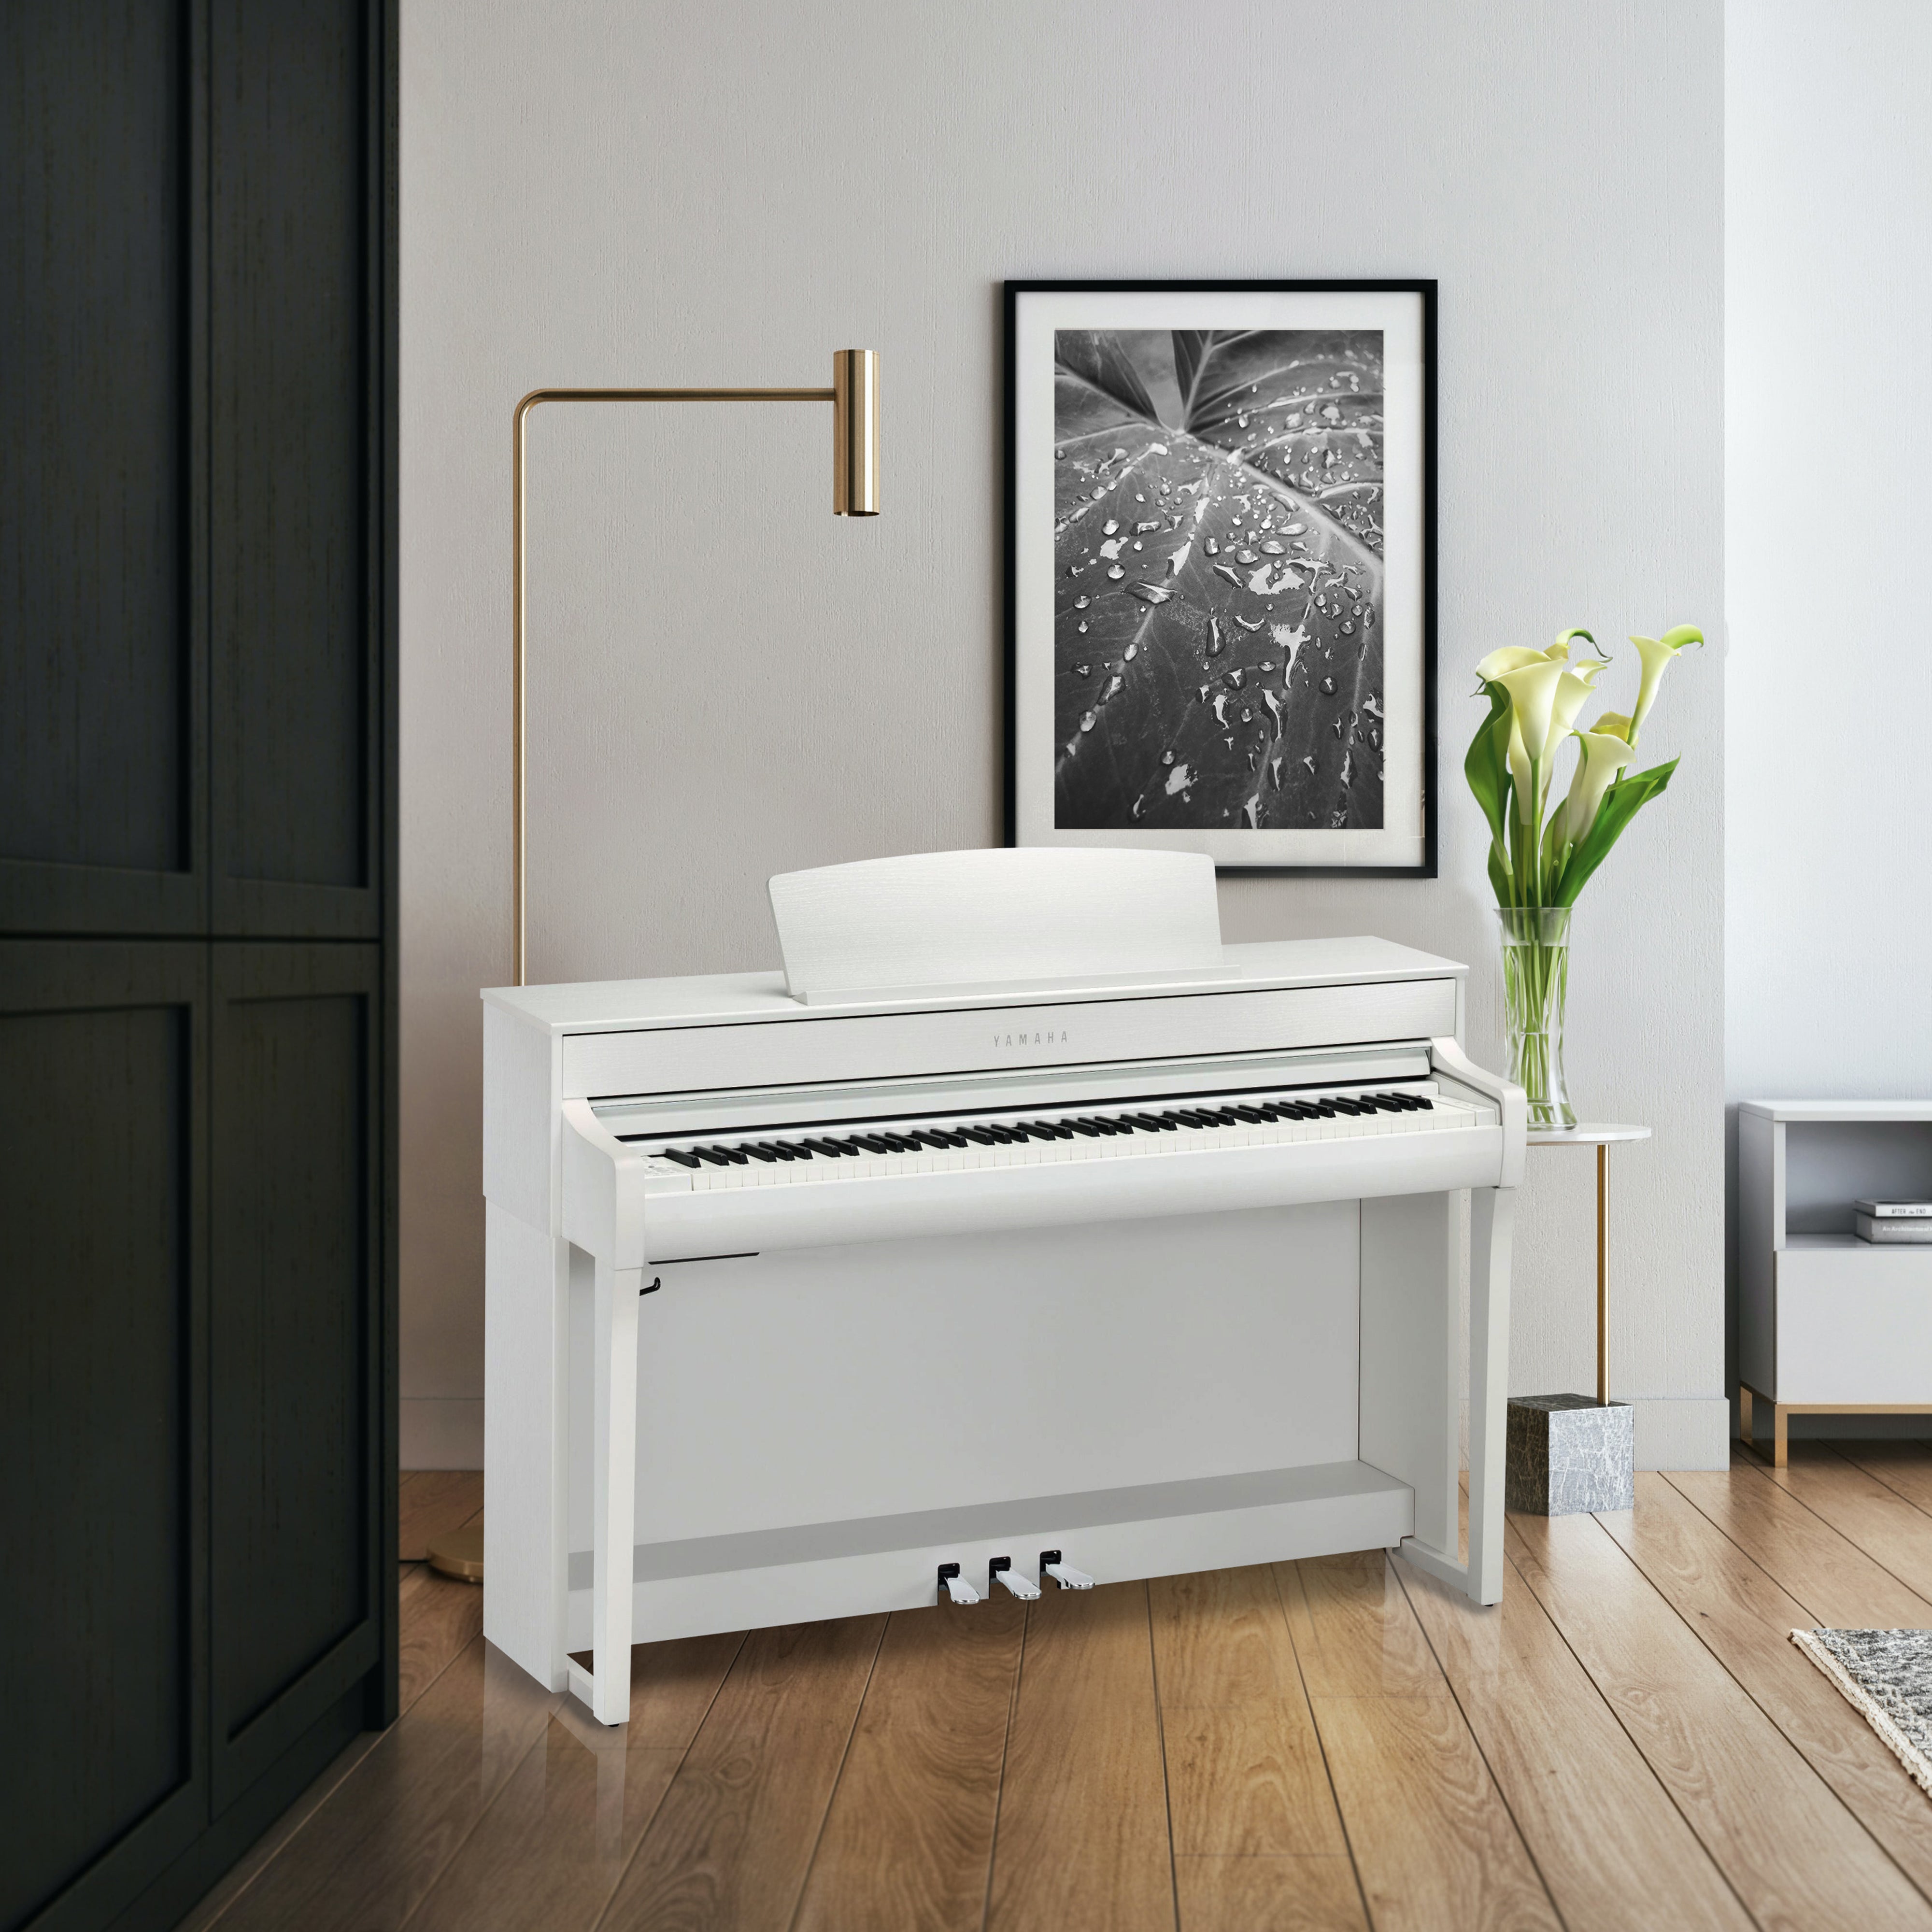 Yamaha Clavinova CLP-745 Digital Piano - Matte White – Kraft Music